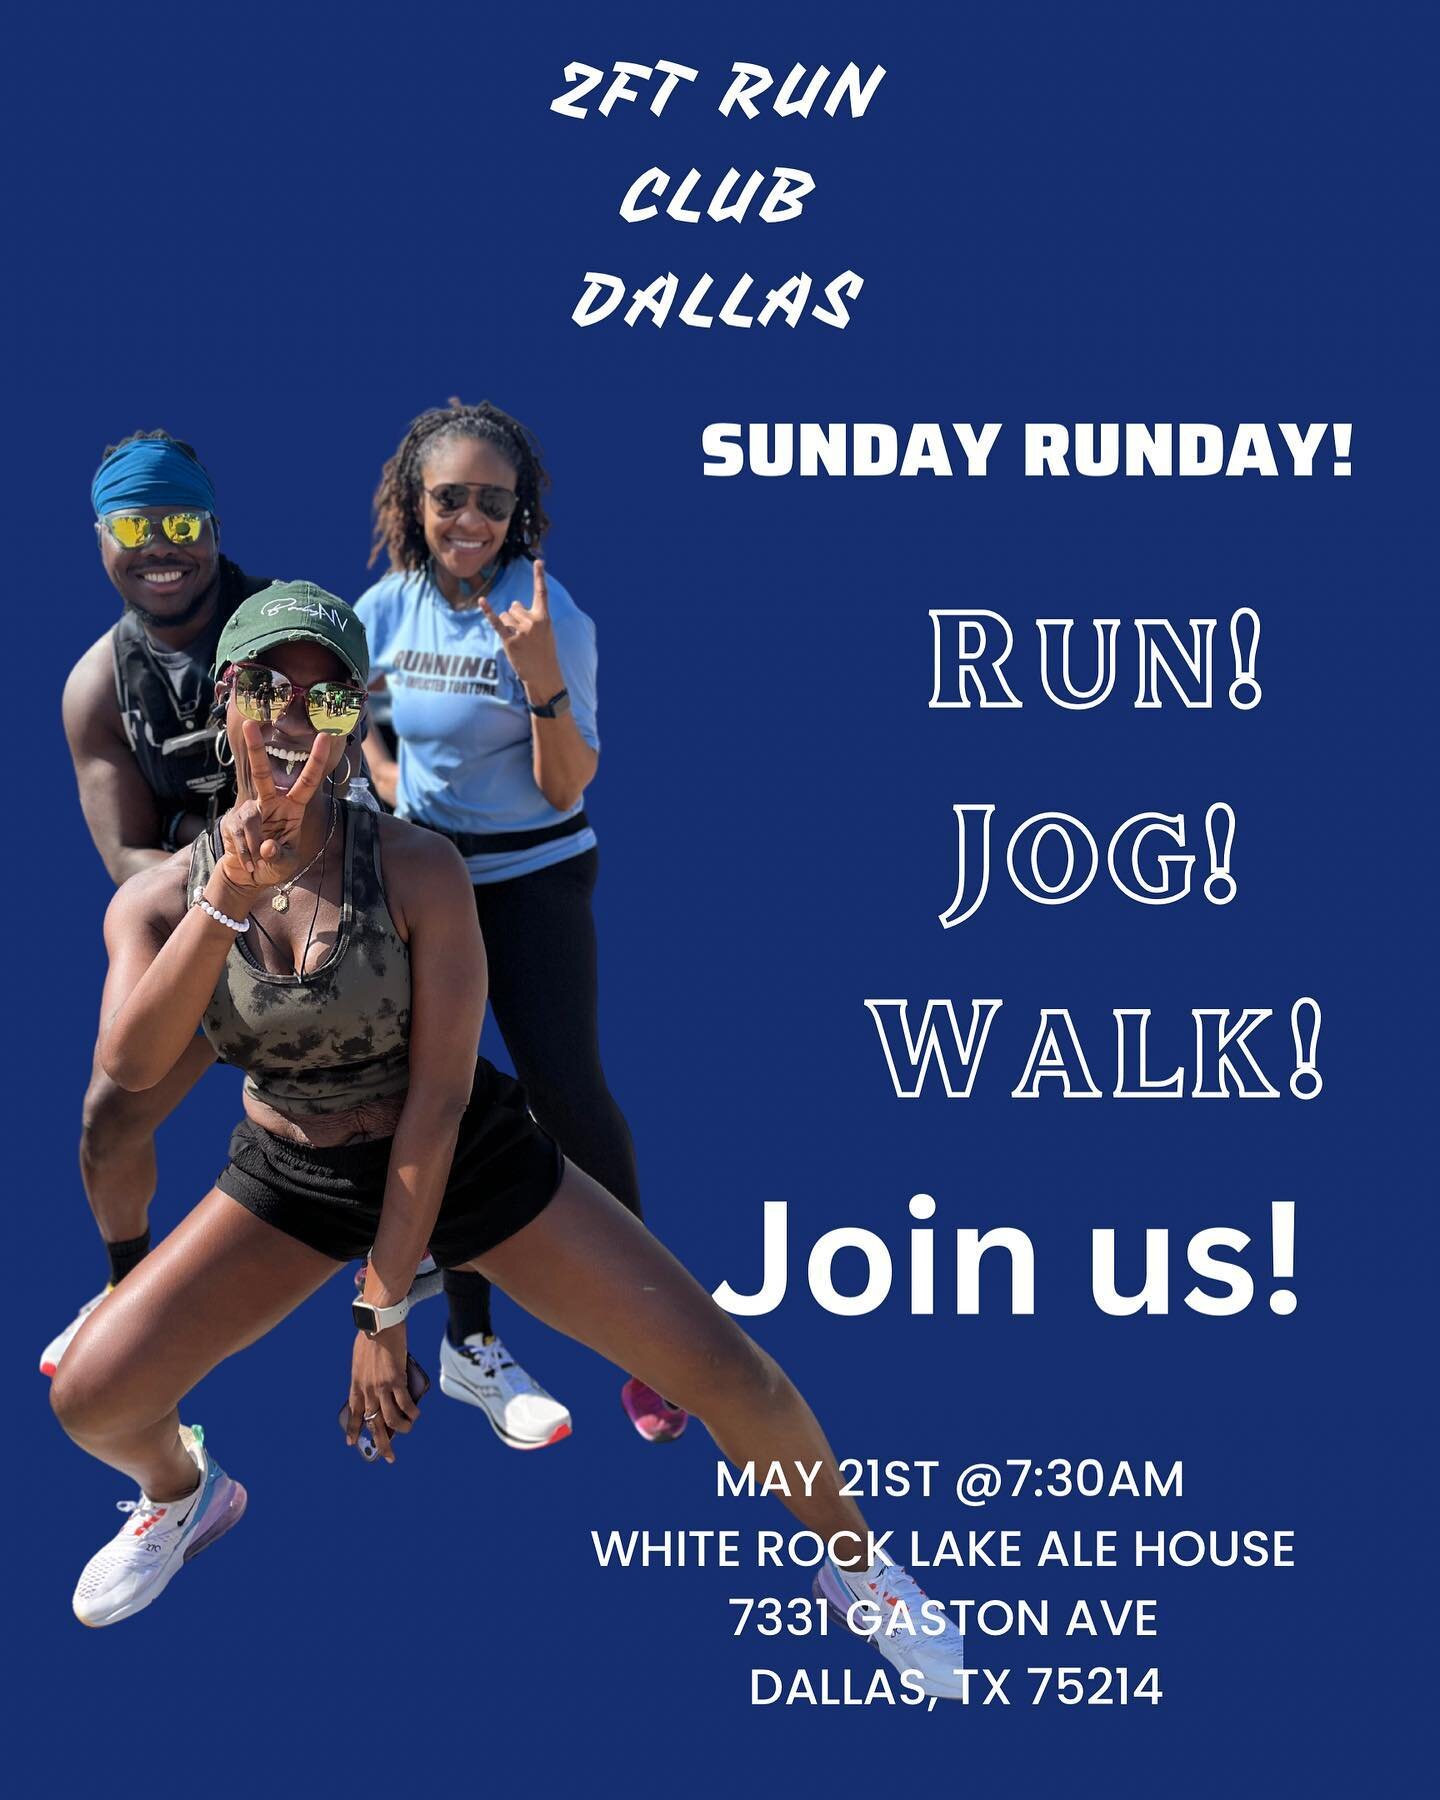 Sunday Runday tomorrow! 

Run! Jog! Walk! 

Come move your body! 

#weboutdemmiles #sundayrunday #tommorow #fyp #explore #zftrunclub #dallastexas #whiterocklake